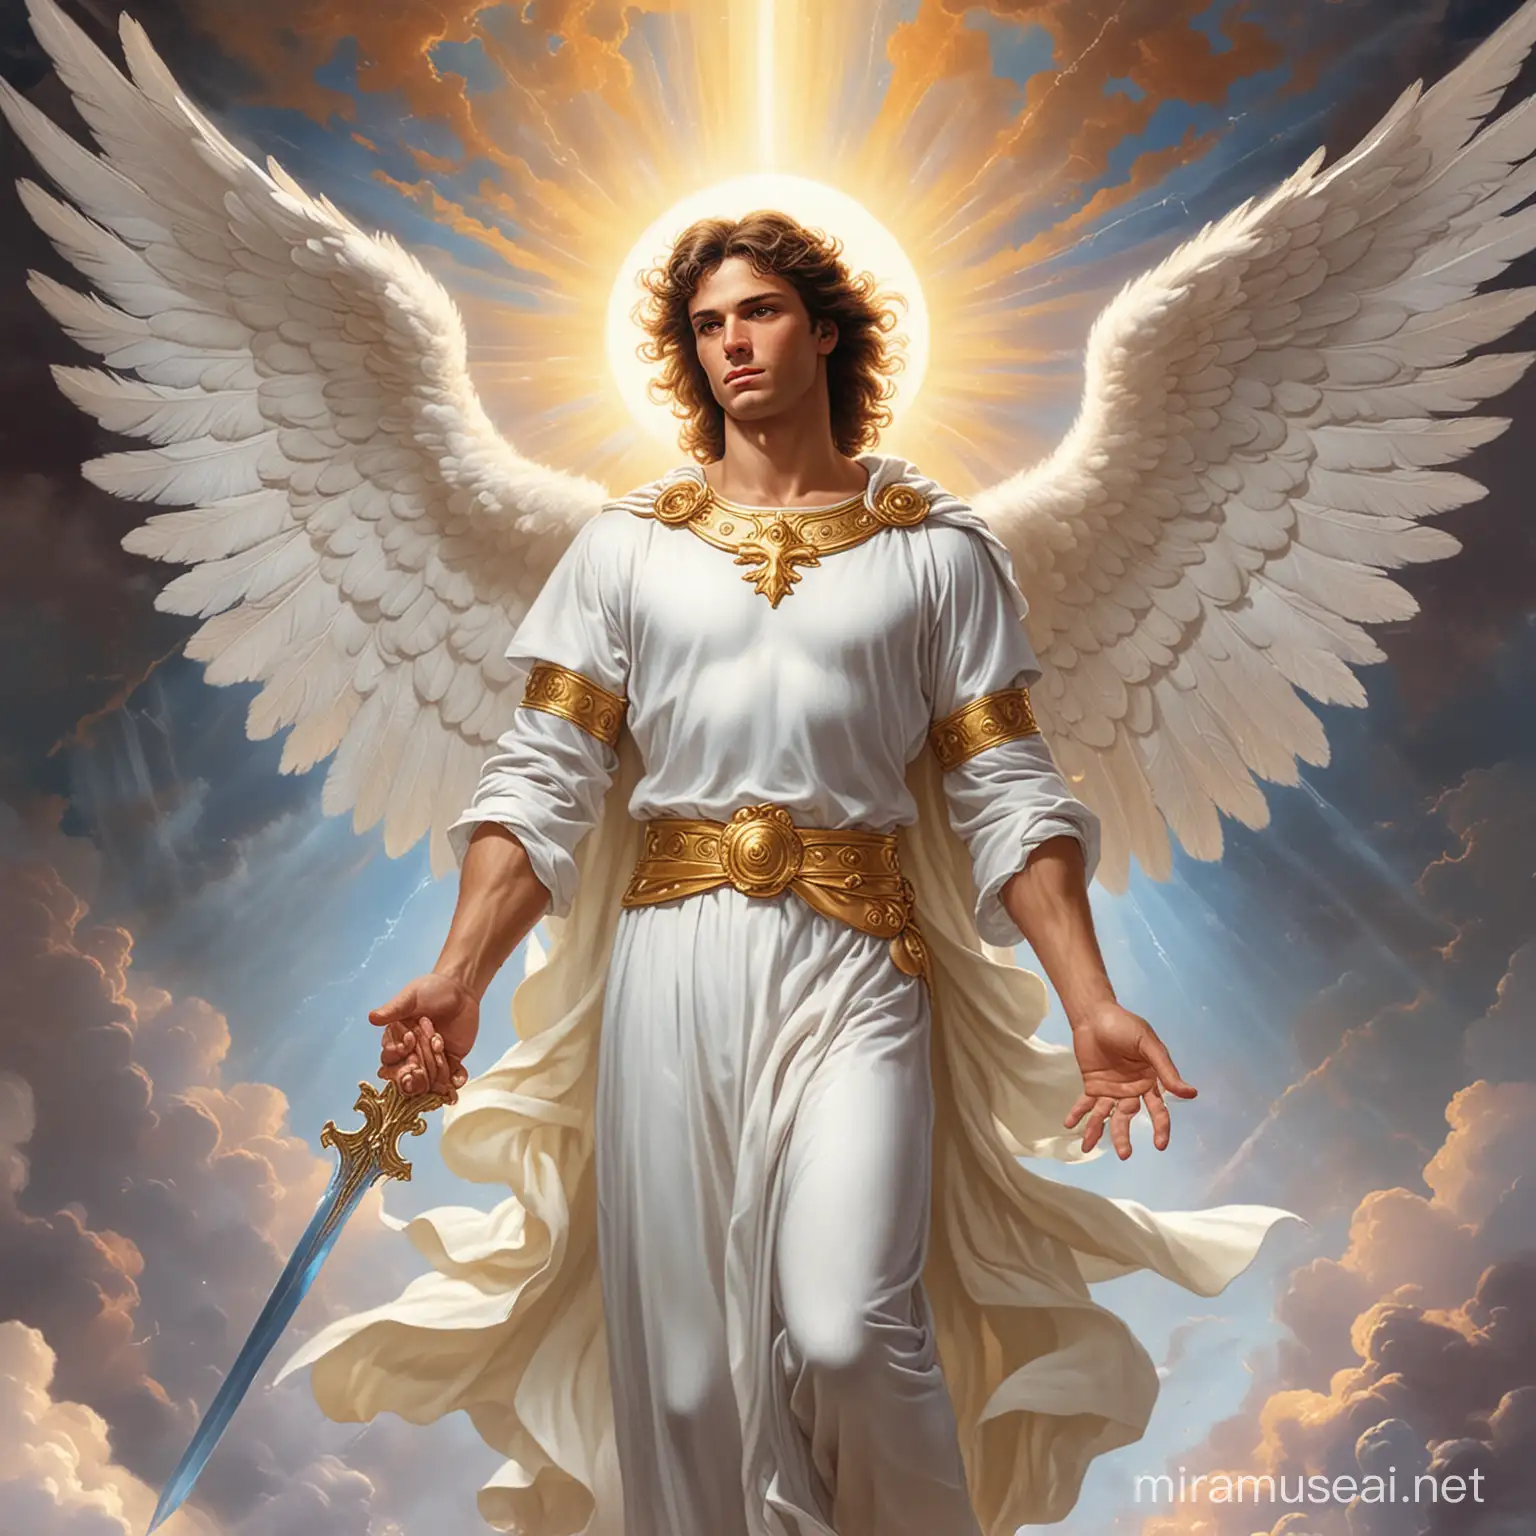 Divine Intervention, Michael archangel